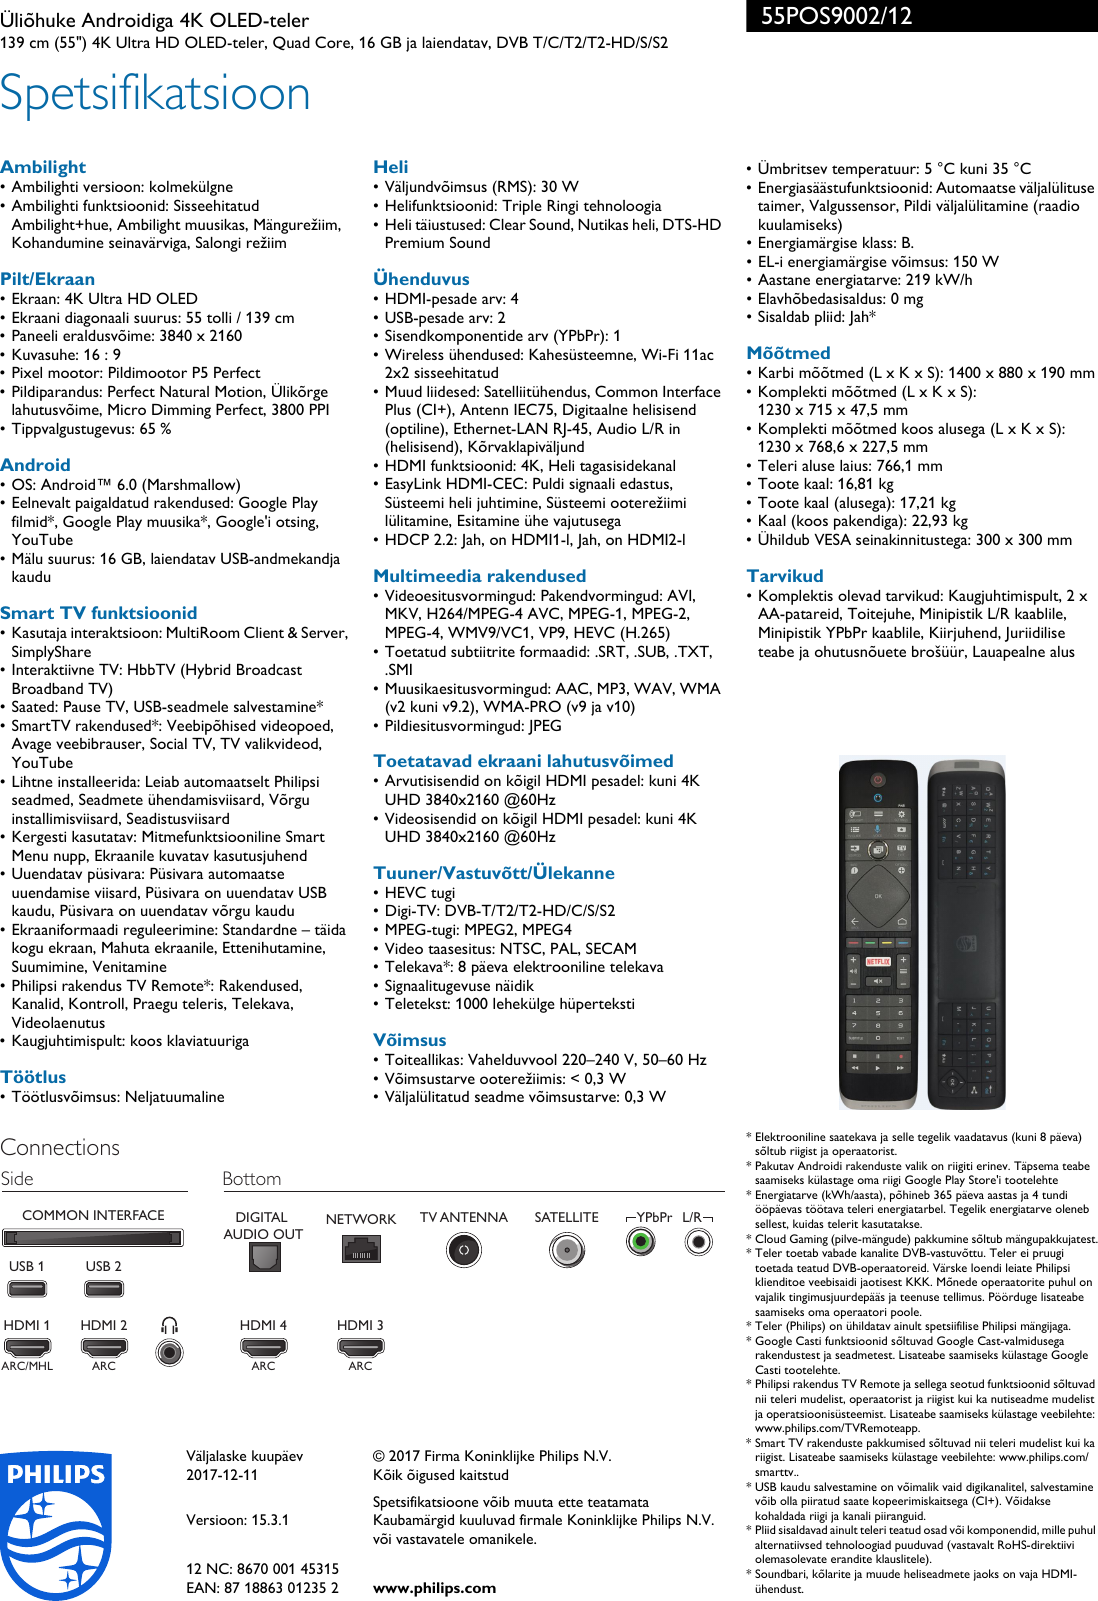 Page 3 of 3 - Philips 55POS9002/12 4K õhkõhuke Androidiga OLED Teler Kolmekülgse Ambilighti Ja P5 Perfect Pildimootoriga ÃµhkÃµhuke ... 55pos9002 12 Pss Estee